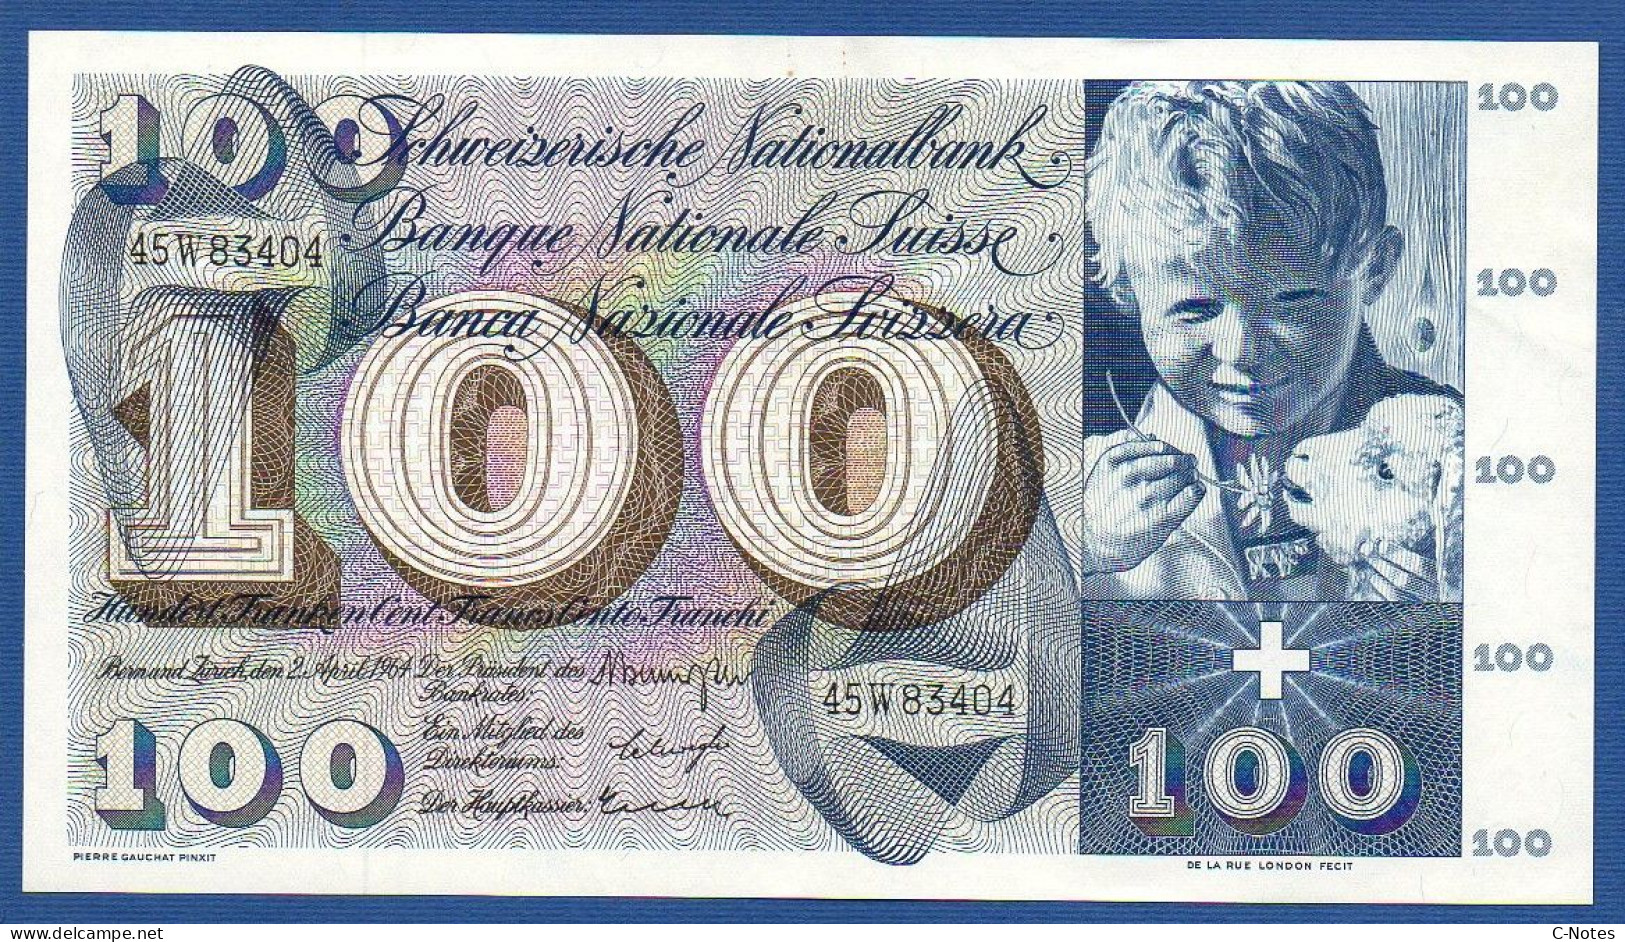 SWITZERLAND - P.49f(1) - 100 Francs 1964 AUNC, Serie 45W83404  -signatures: Brenno Galli / Schwegler / Kunz - Suiza